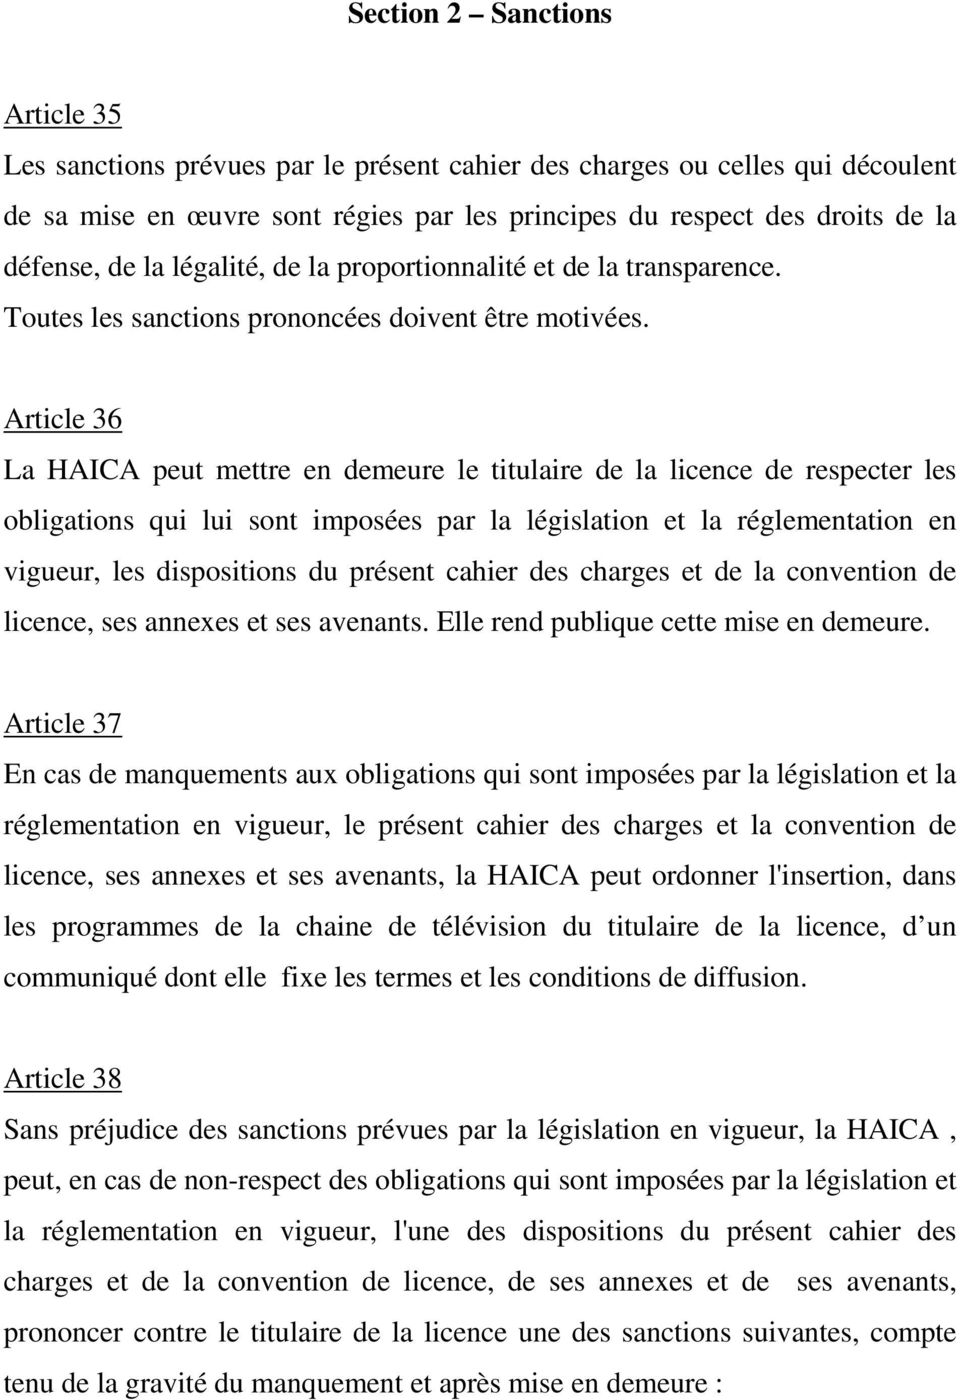 Article 36 La HAICA peut mettre en demeure le titulaire de la licence de respecter les obligations qui lui sont imposées par la législation et la réglementation en vigueur, les dispositions du